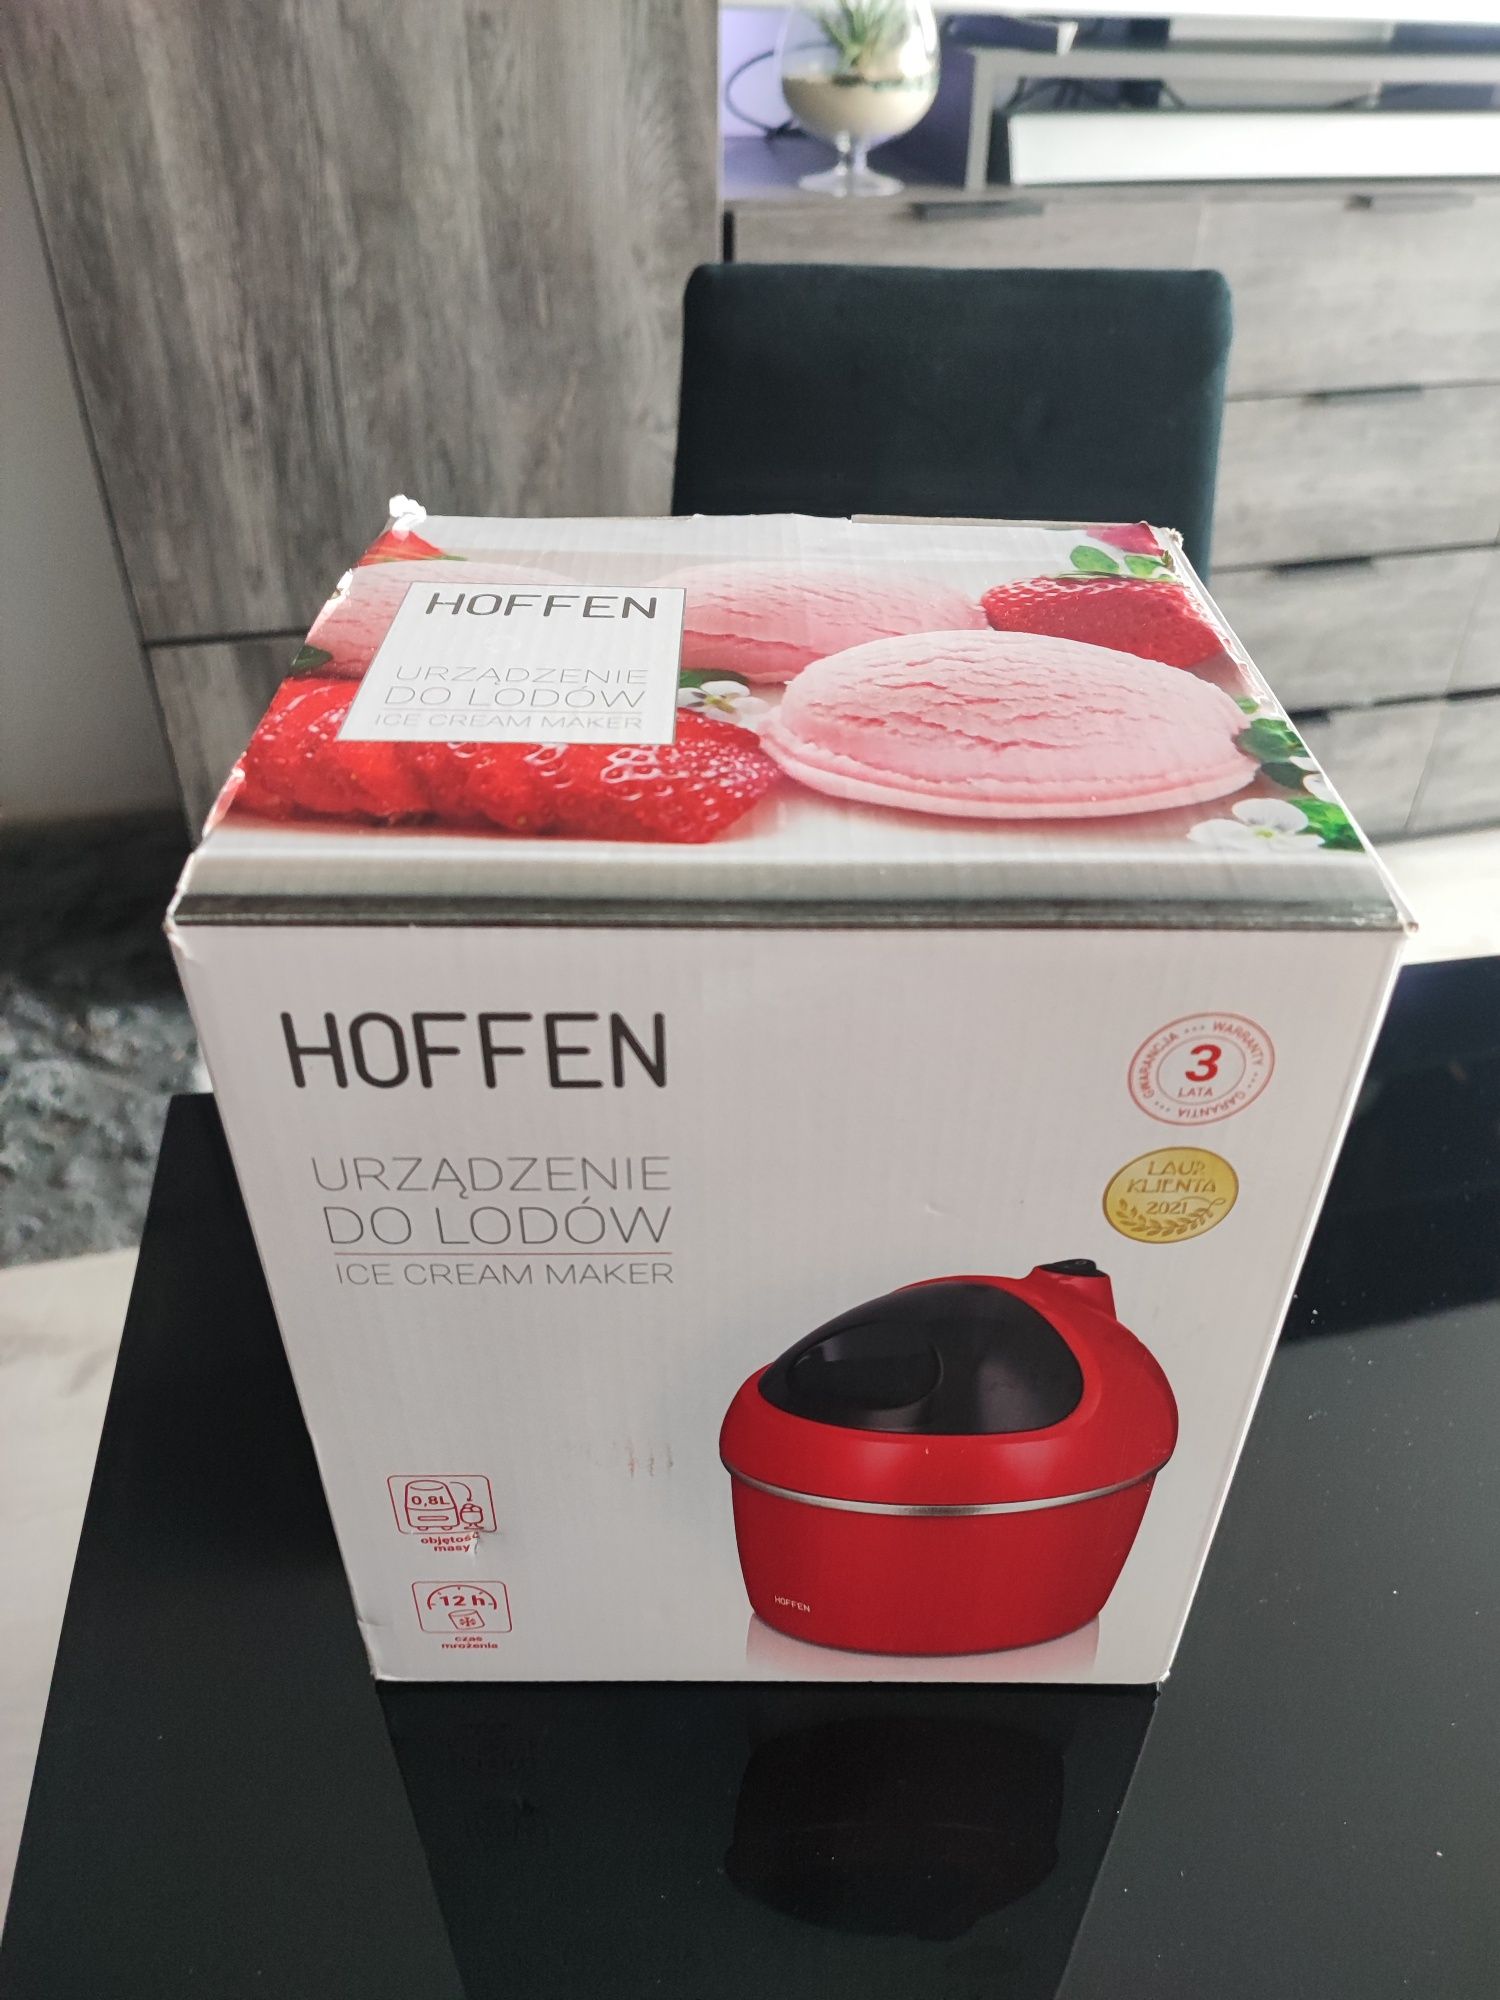 Urządzenie do lodów Hoffen czerwone - domowe lody